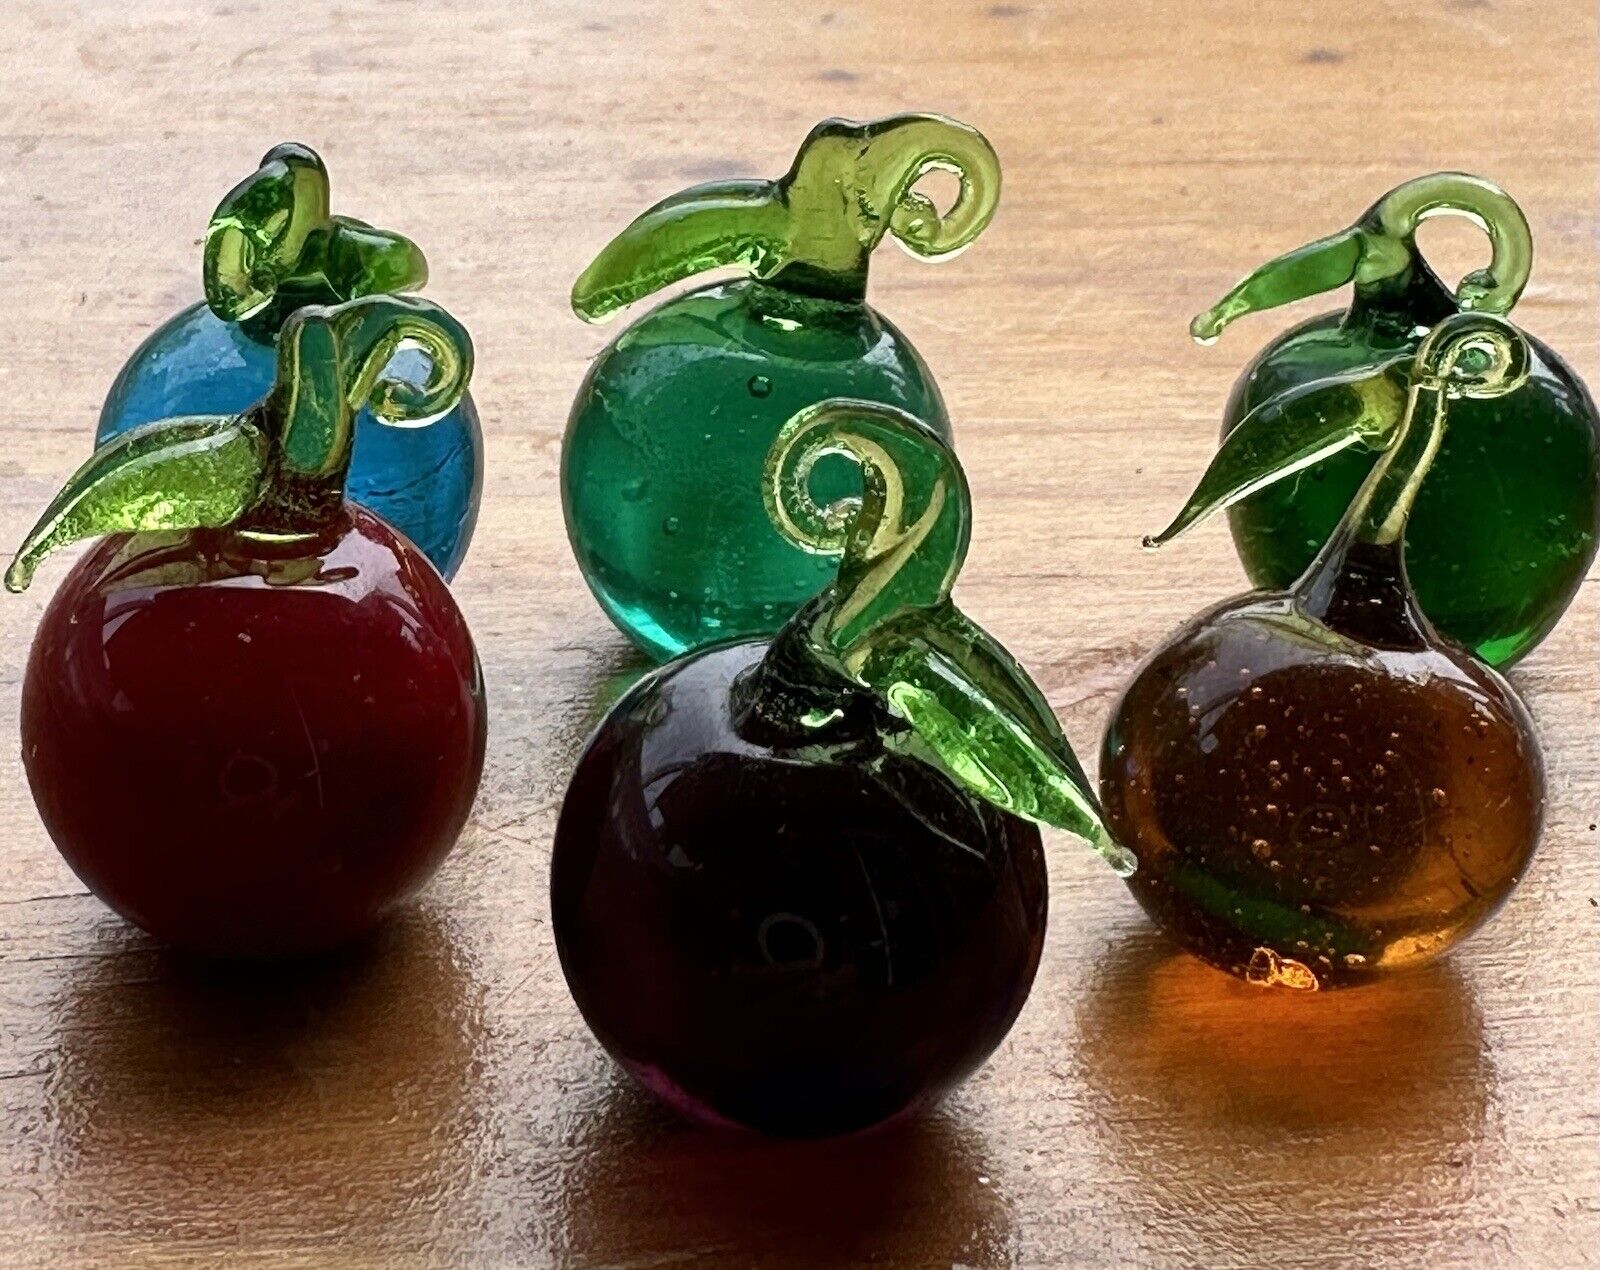 New vintage Art Glass  apples Miniature Mini Figurines Set of 6